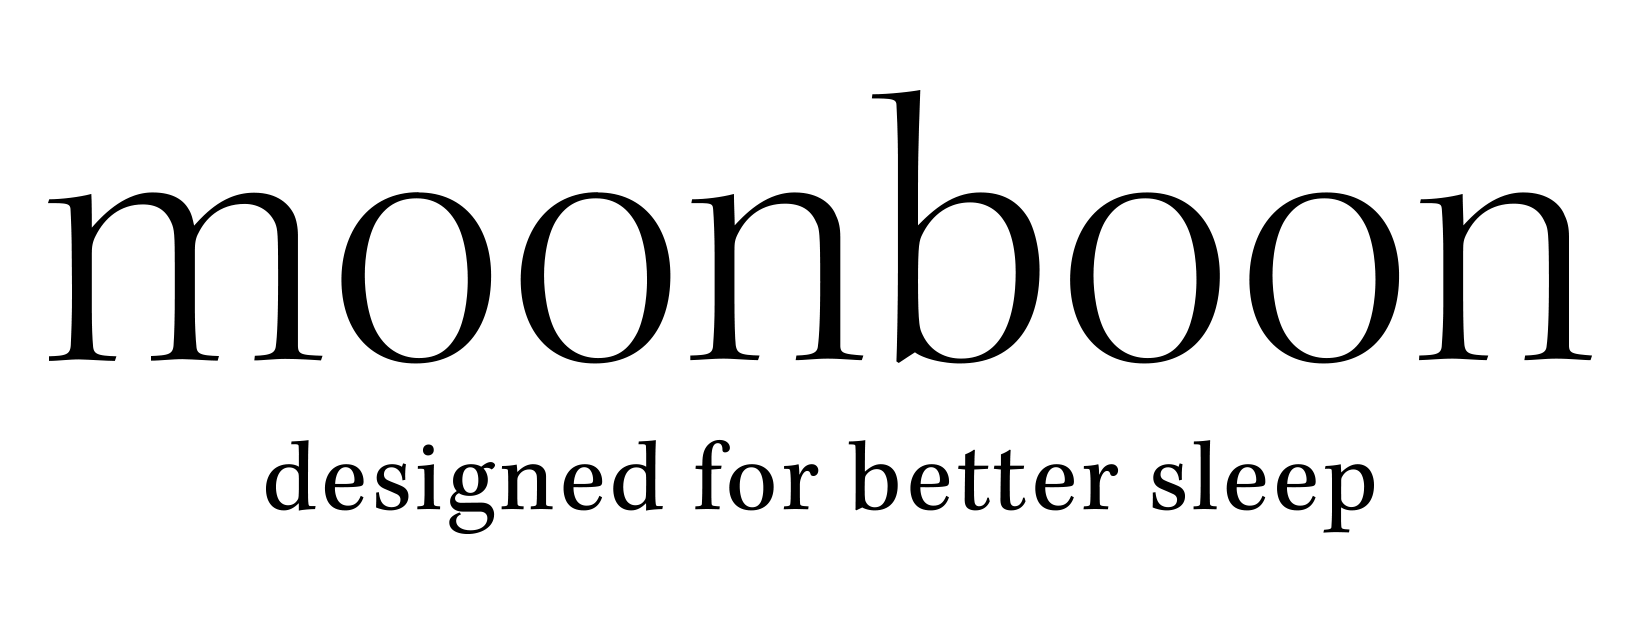 Moonboon - Hjälpcenter logo